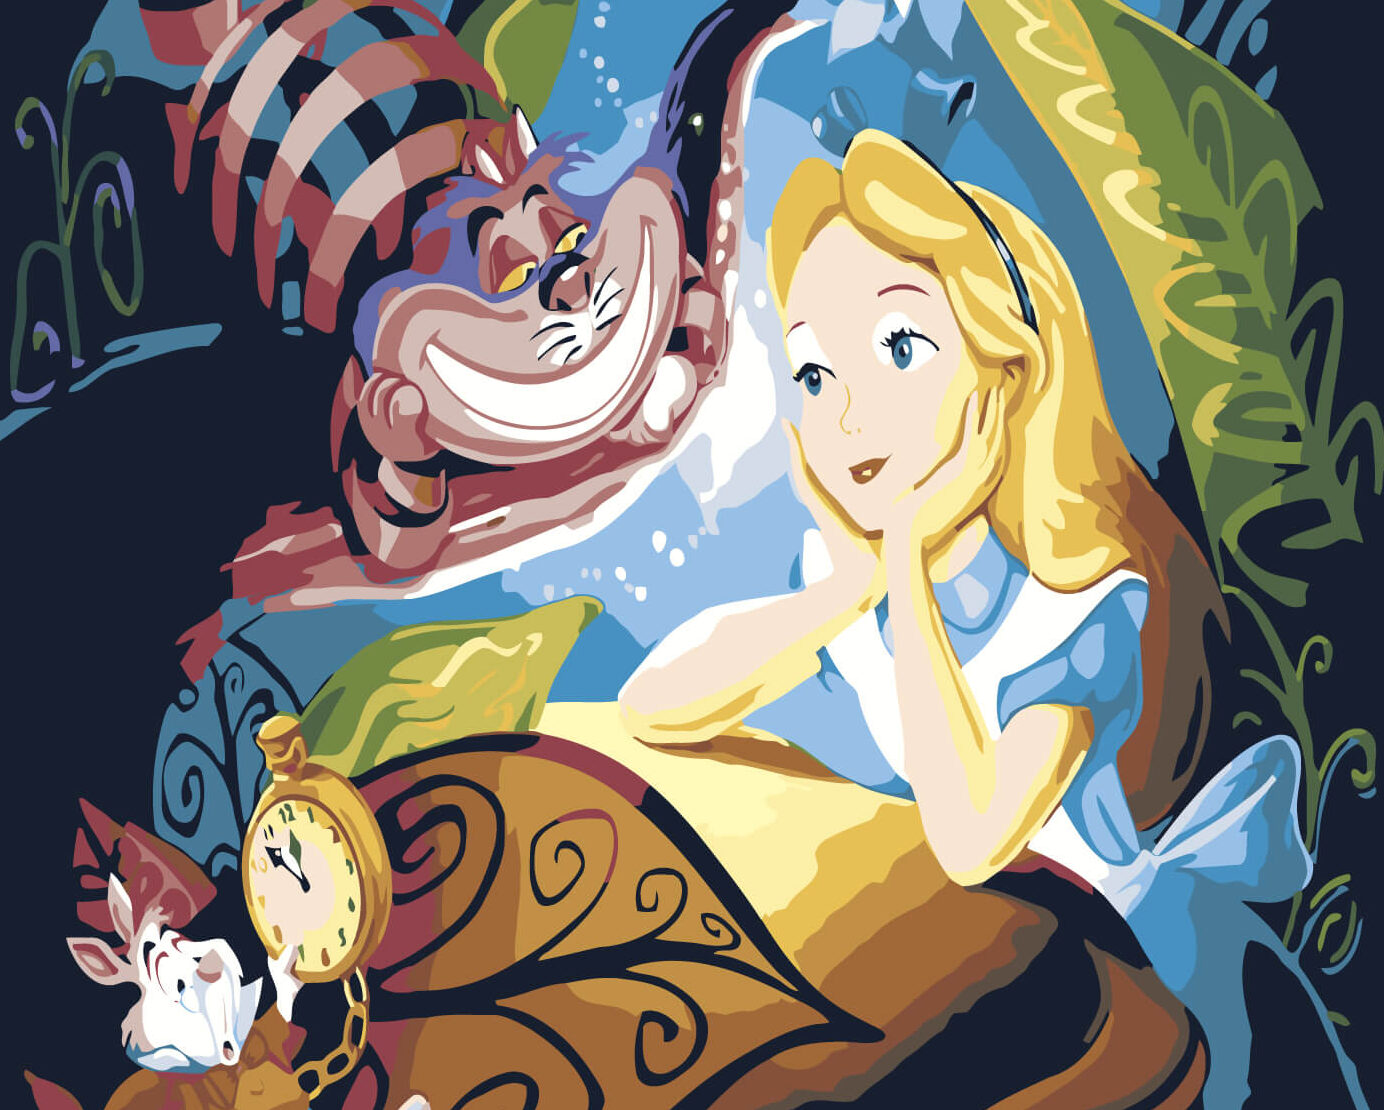 Alice no país das maravilhas - imagem colorida de Alice, o gato e o coelho.